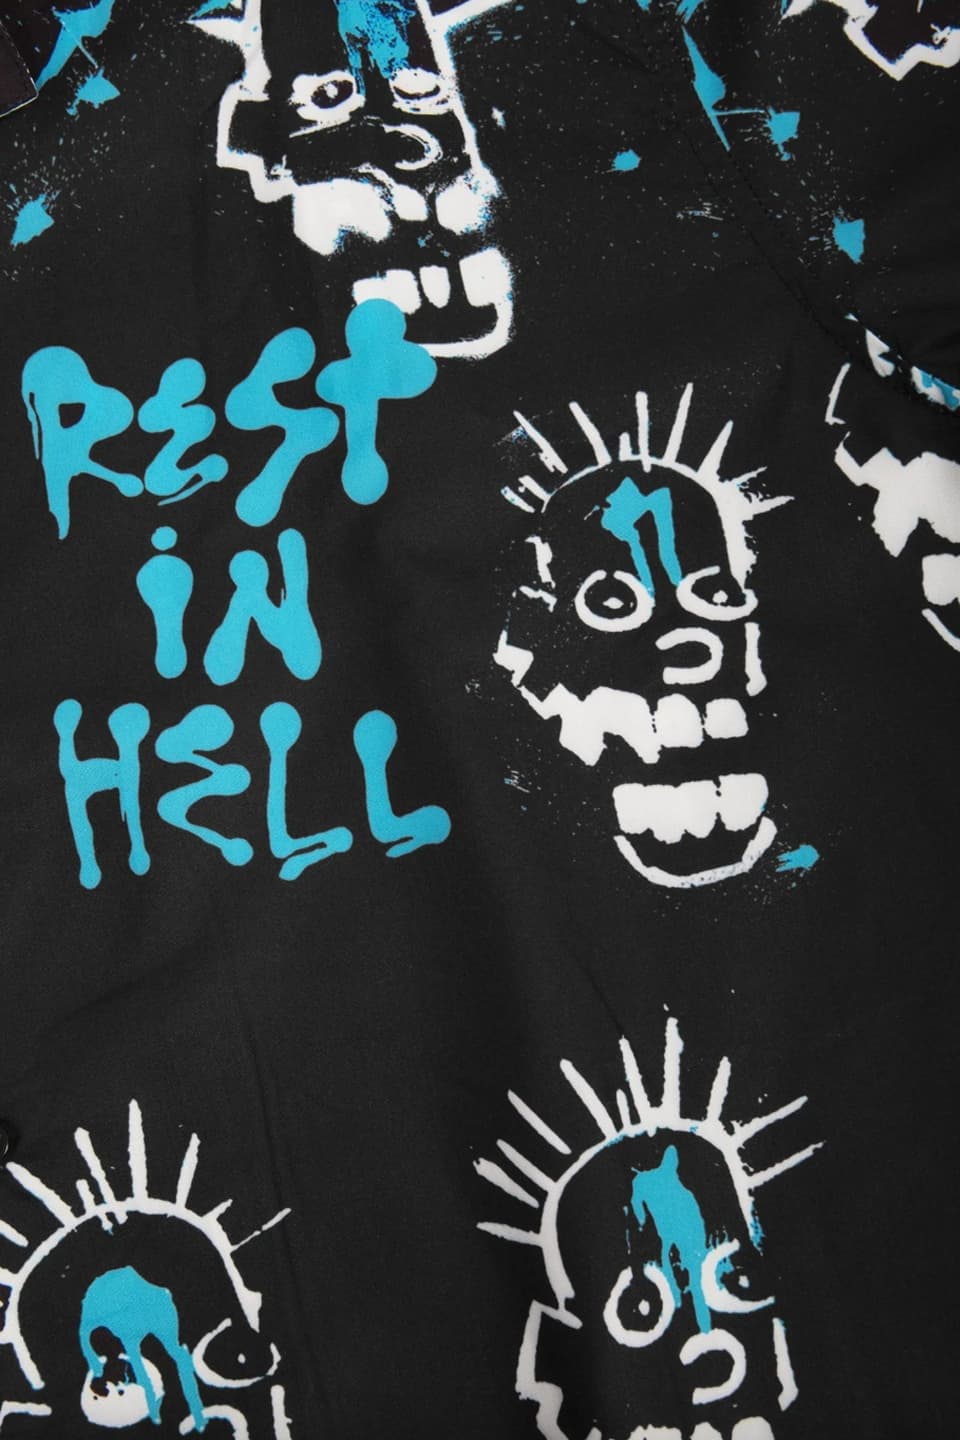 Shirt Skull Hell